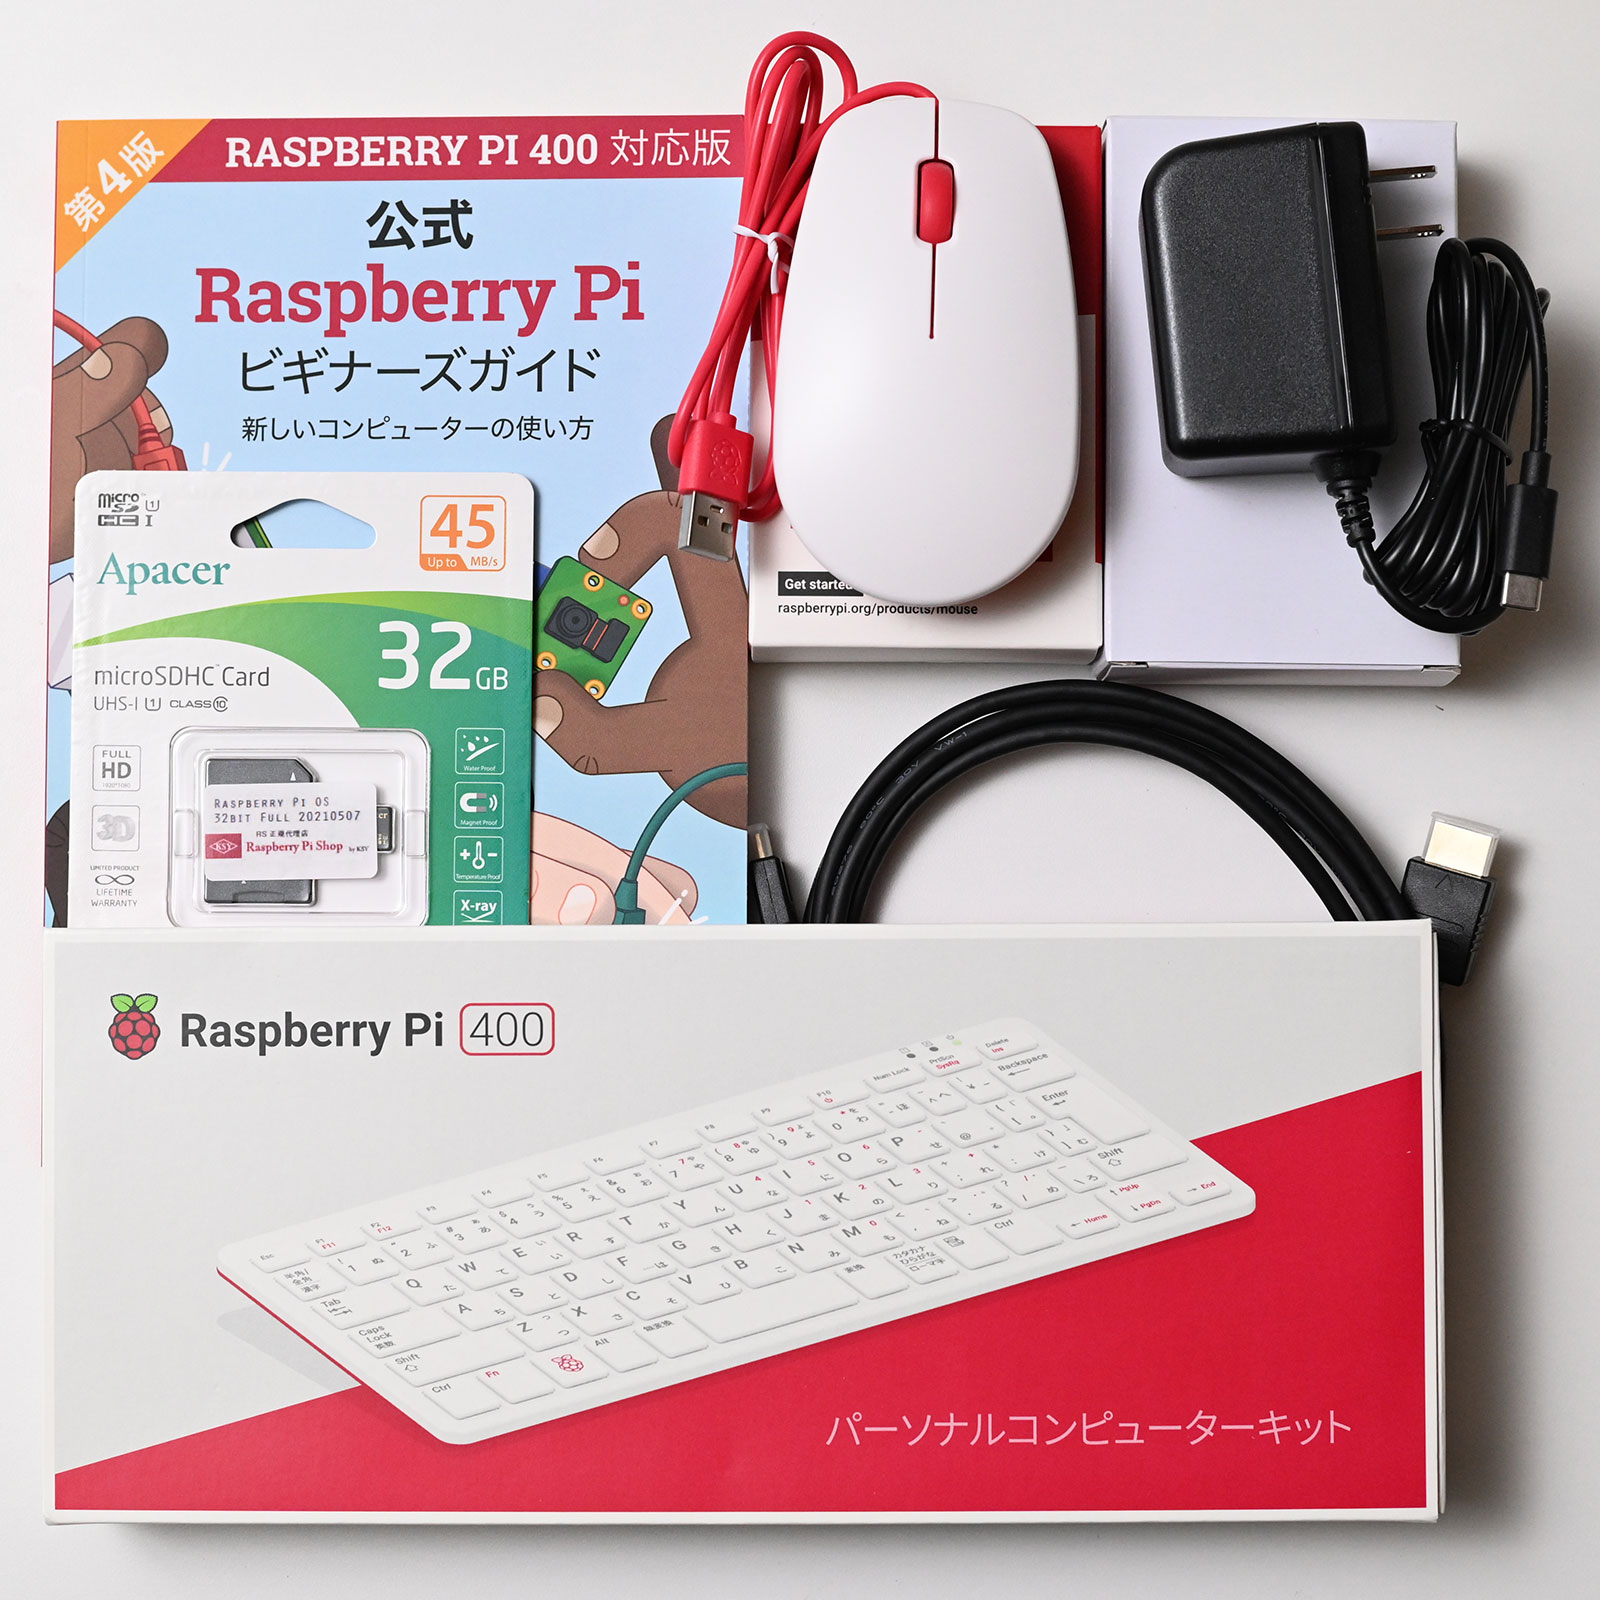 最新購入  ラズベリーパイ 400 pi 【新品】キーボード一体型Raspberry デスクトップ型PC